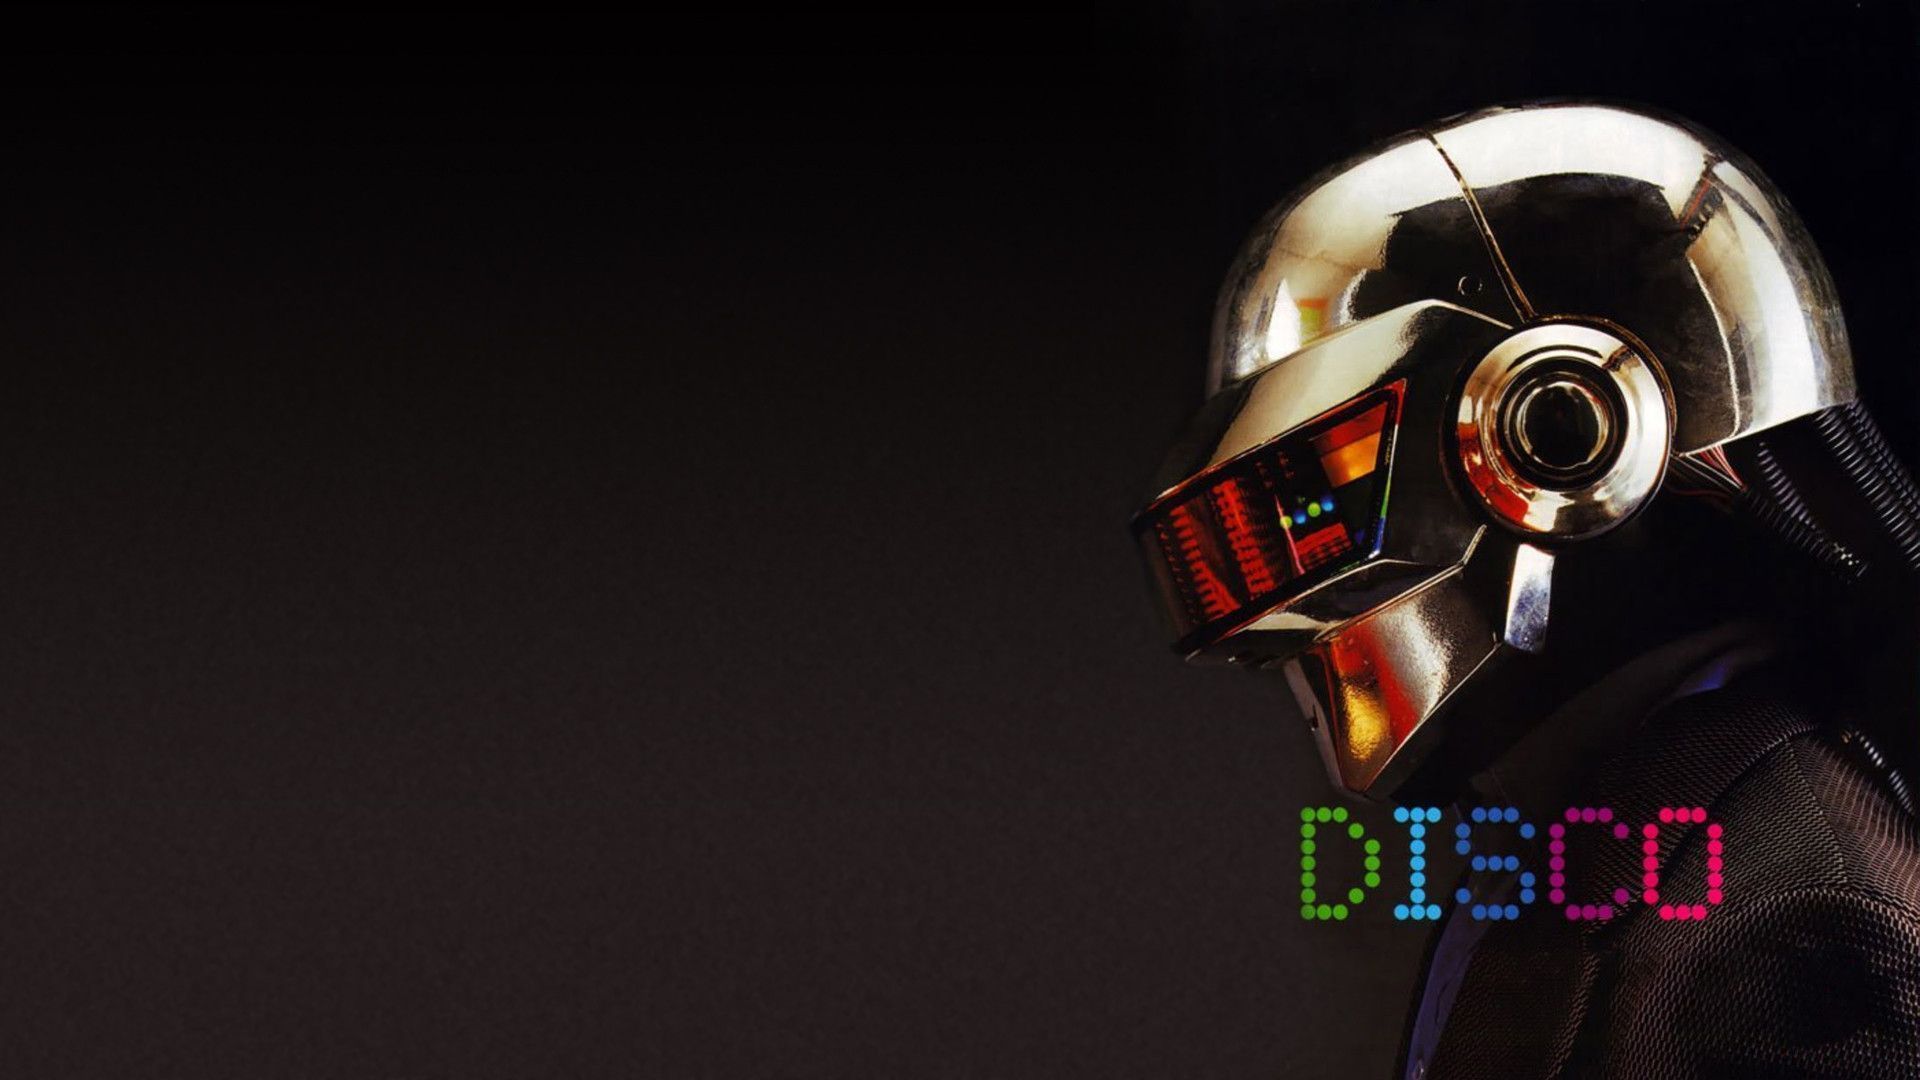 Daft Punk Computer Wallpapers, Desktop Backgrounds | 1920x1080 ...